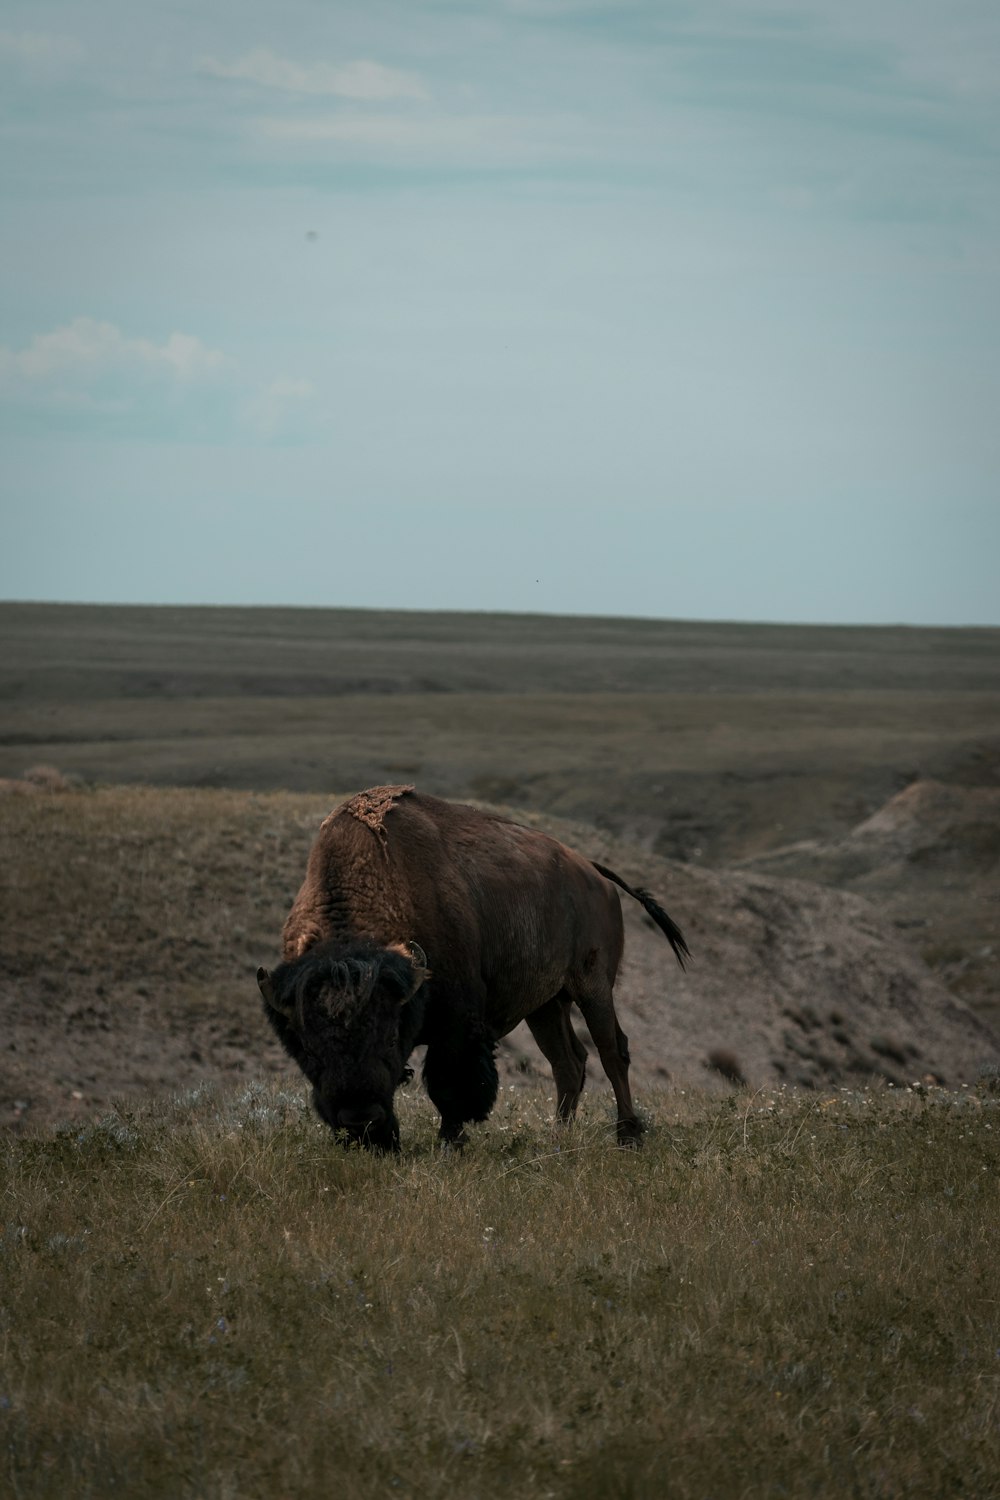 brown bison on brown grass field under blue sky during daytime